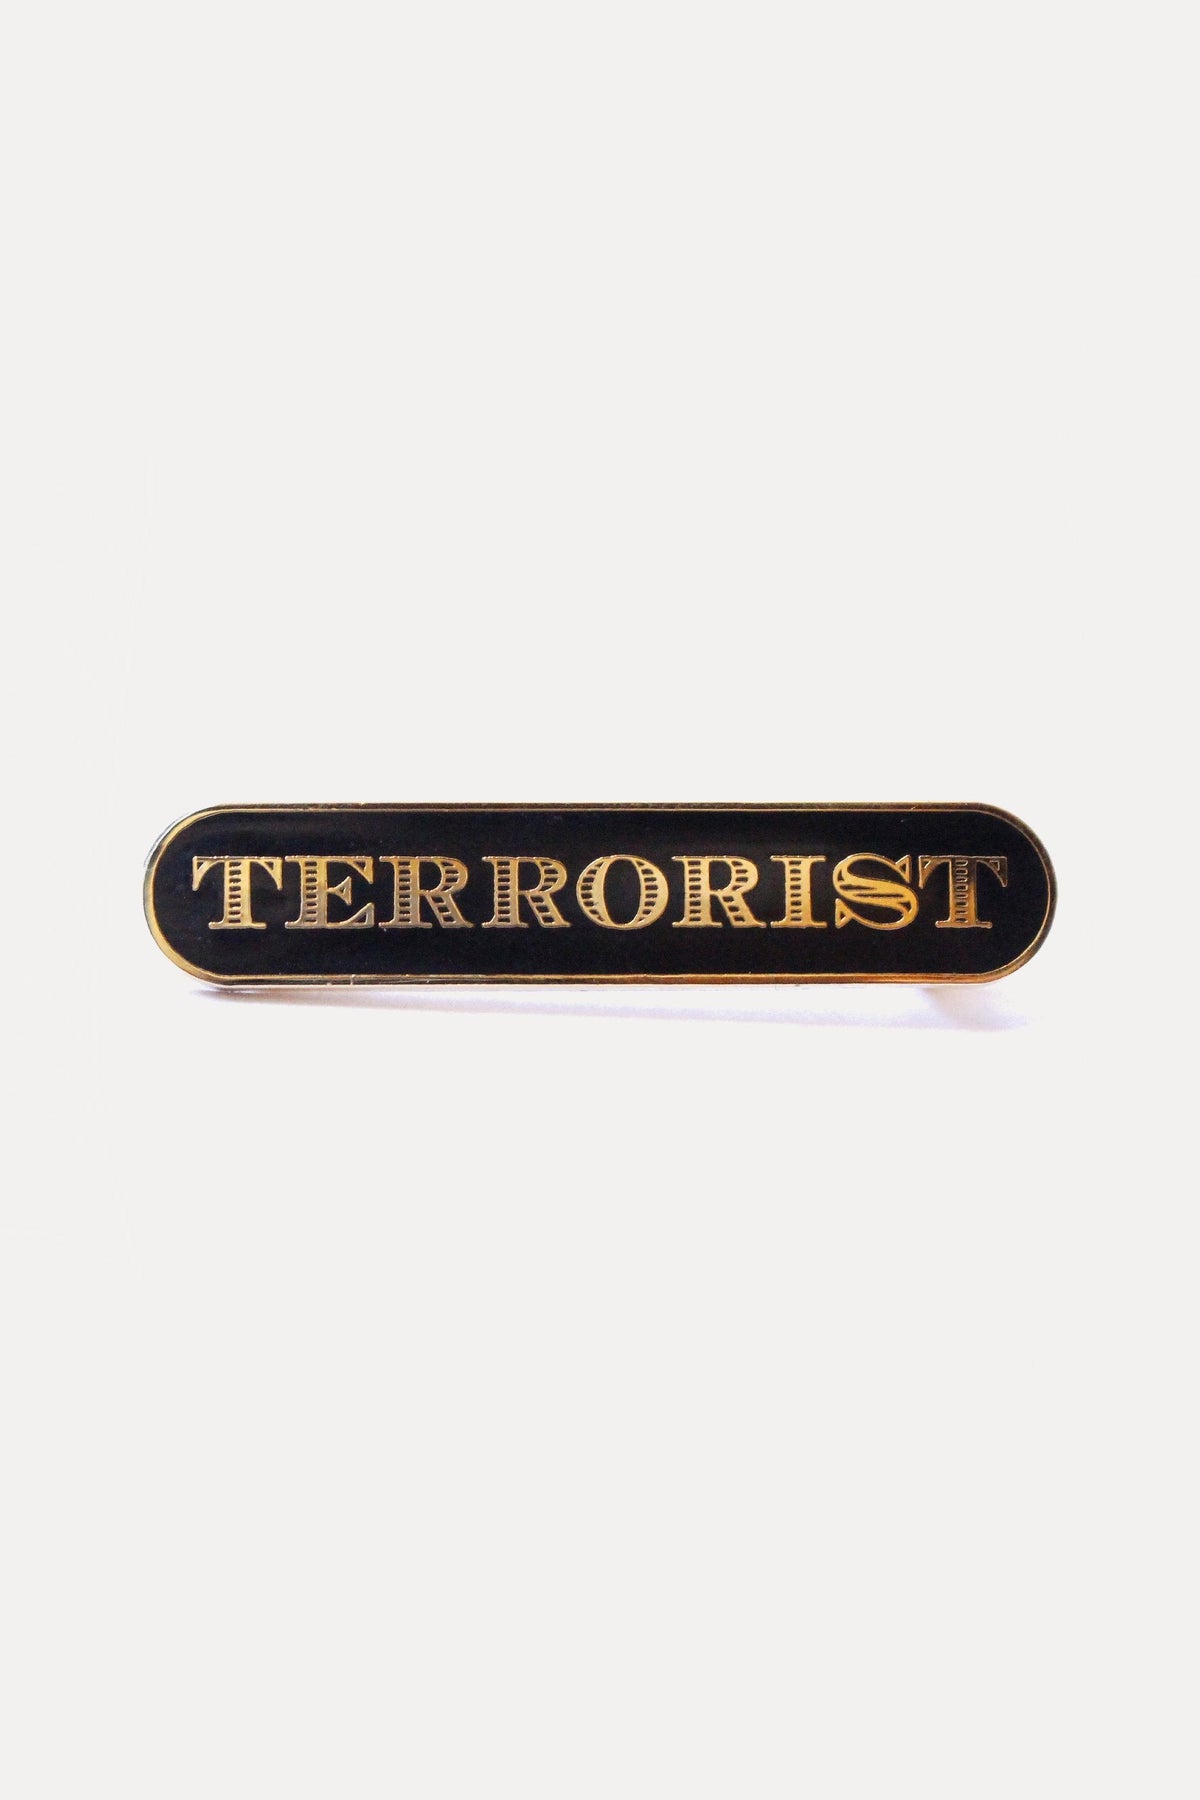 CLASSIC TERRORIST PIN - BLACK-accessories-A Child Of The Jago